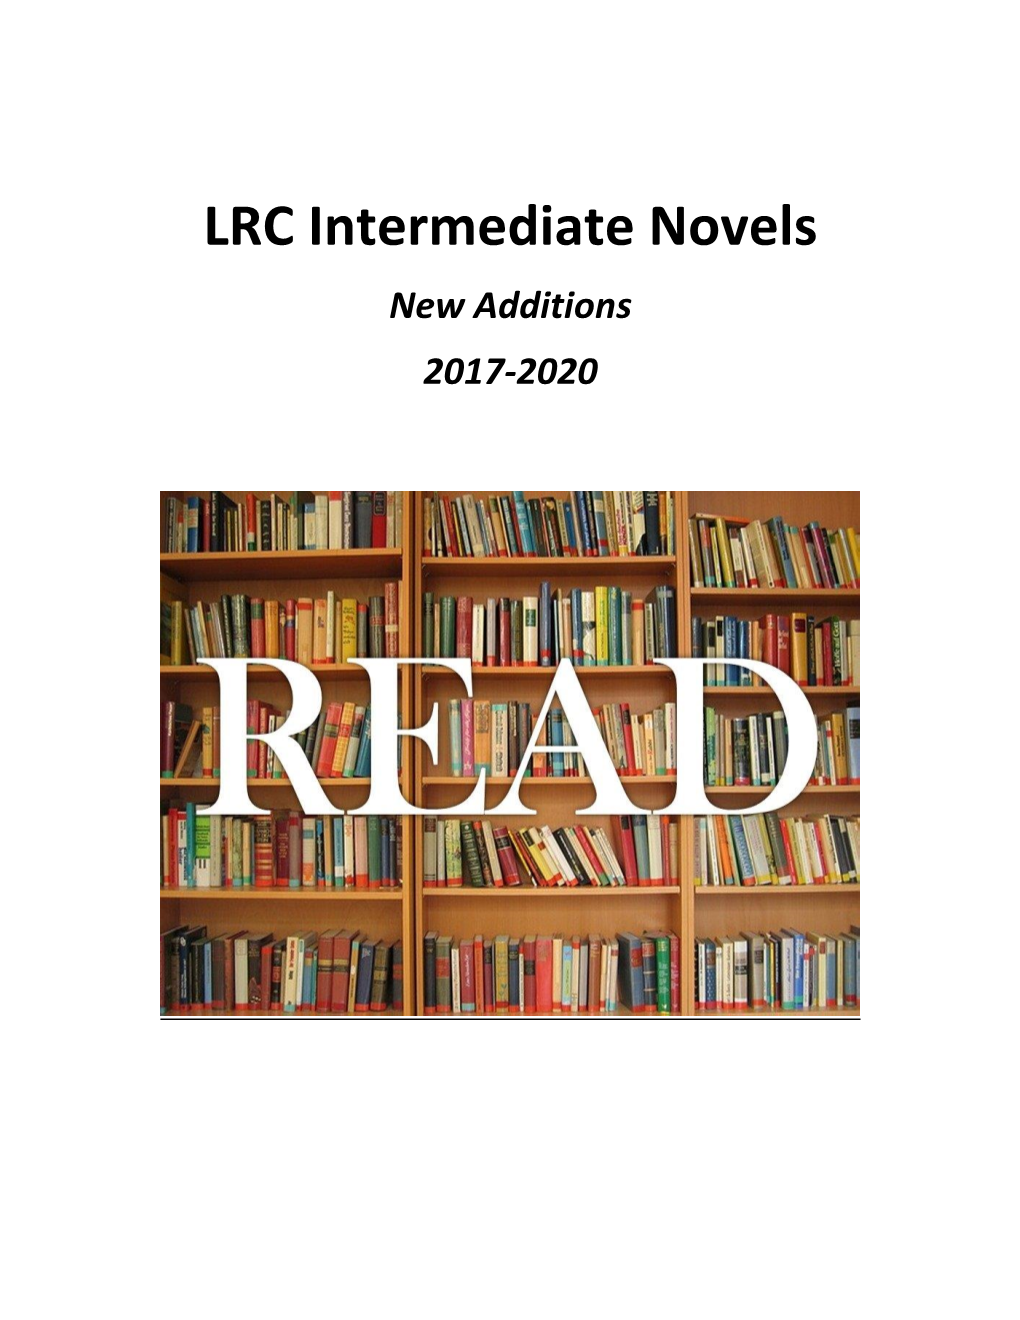 LRC Intermediate Novels New Additions 2017-2020